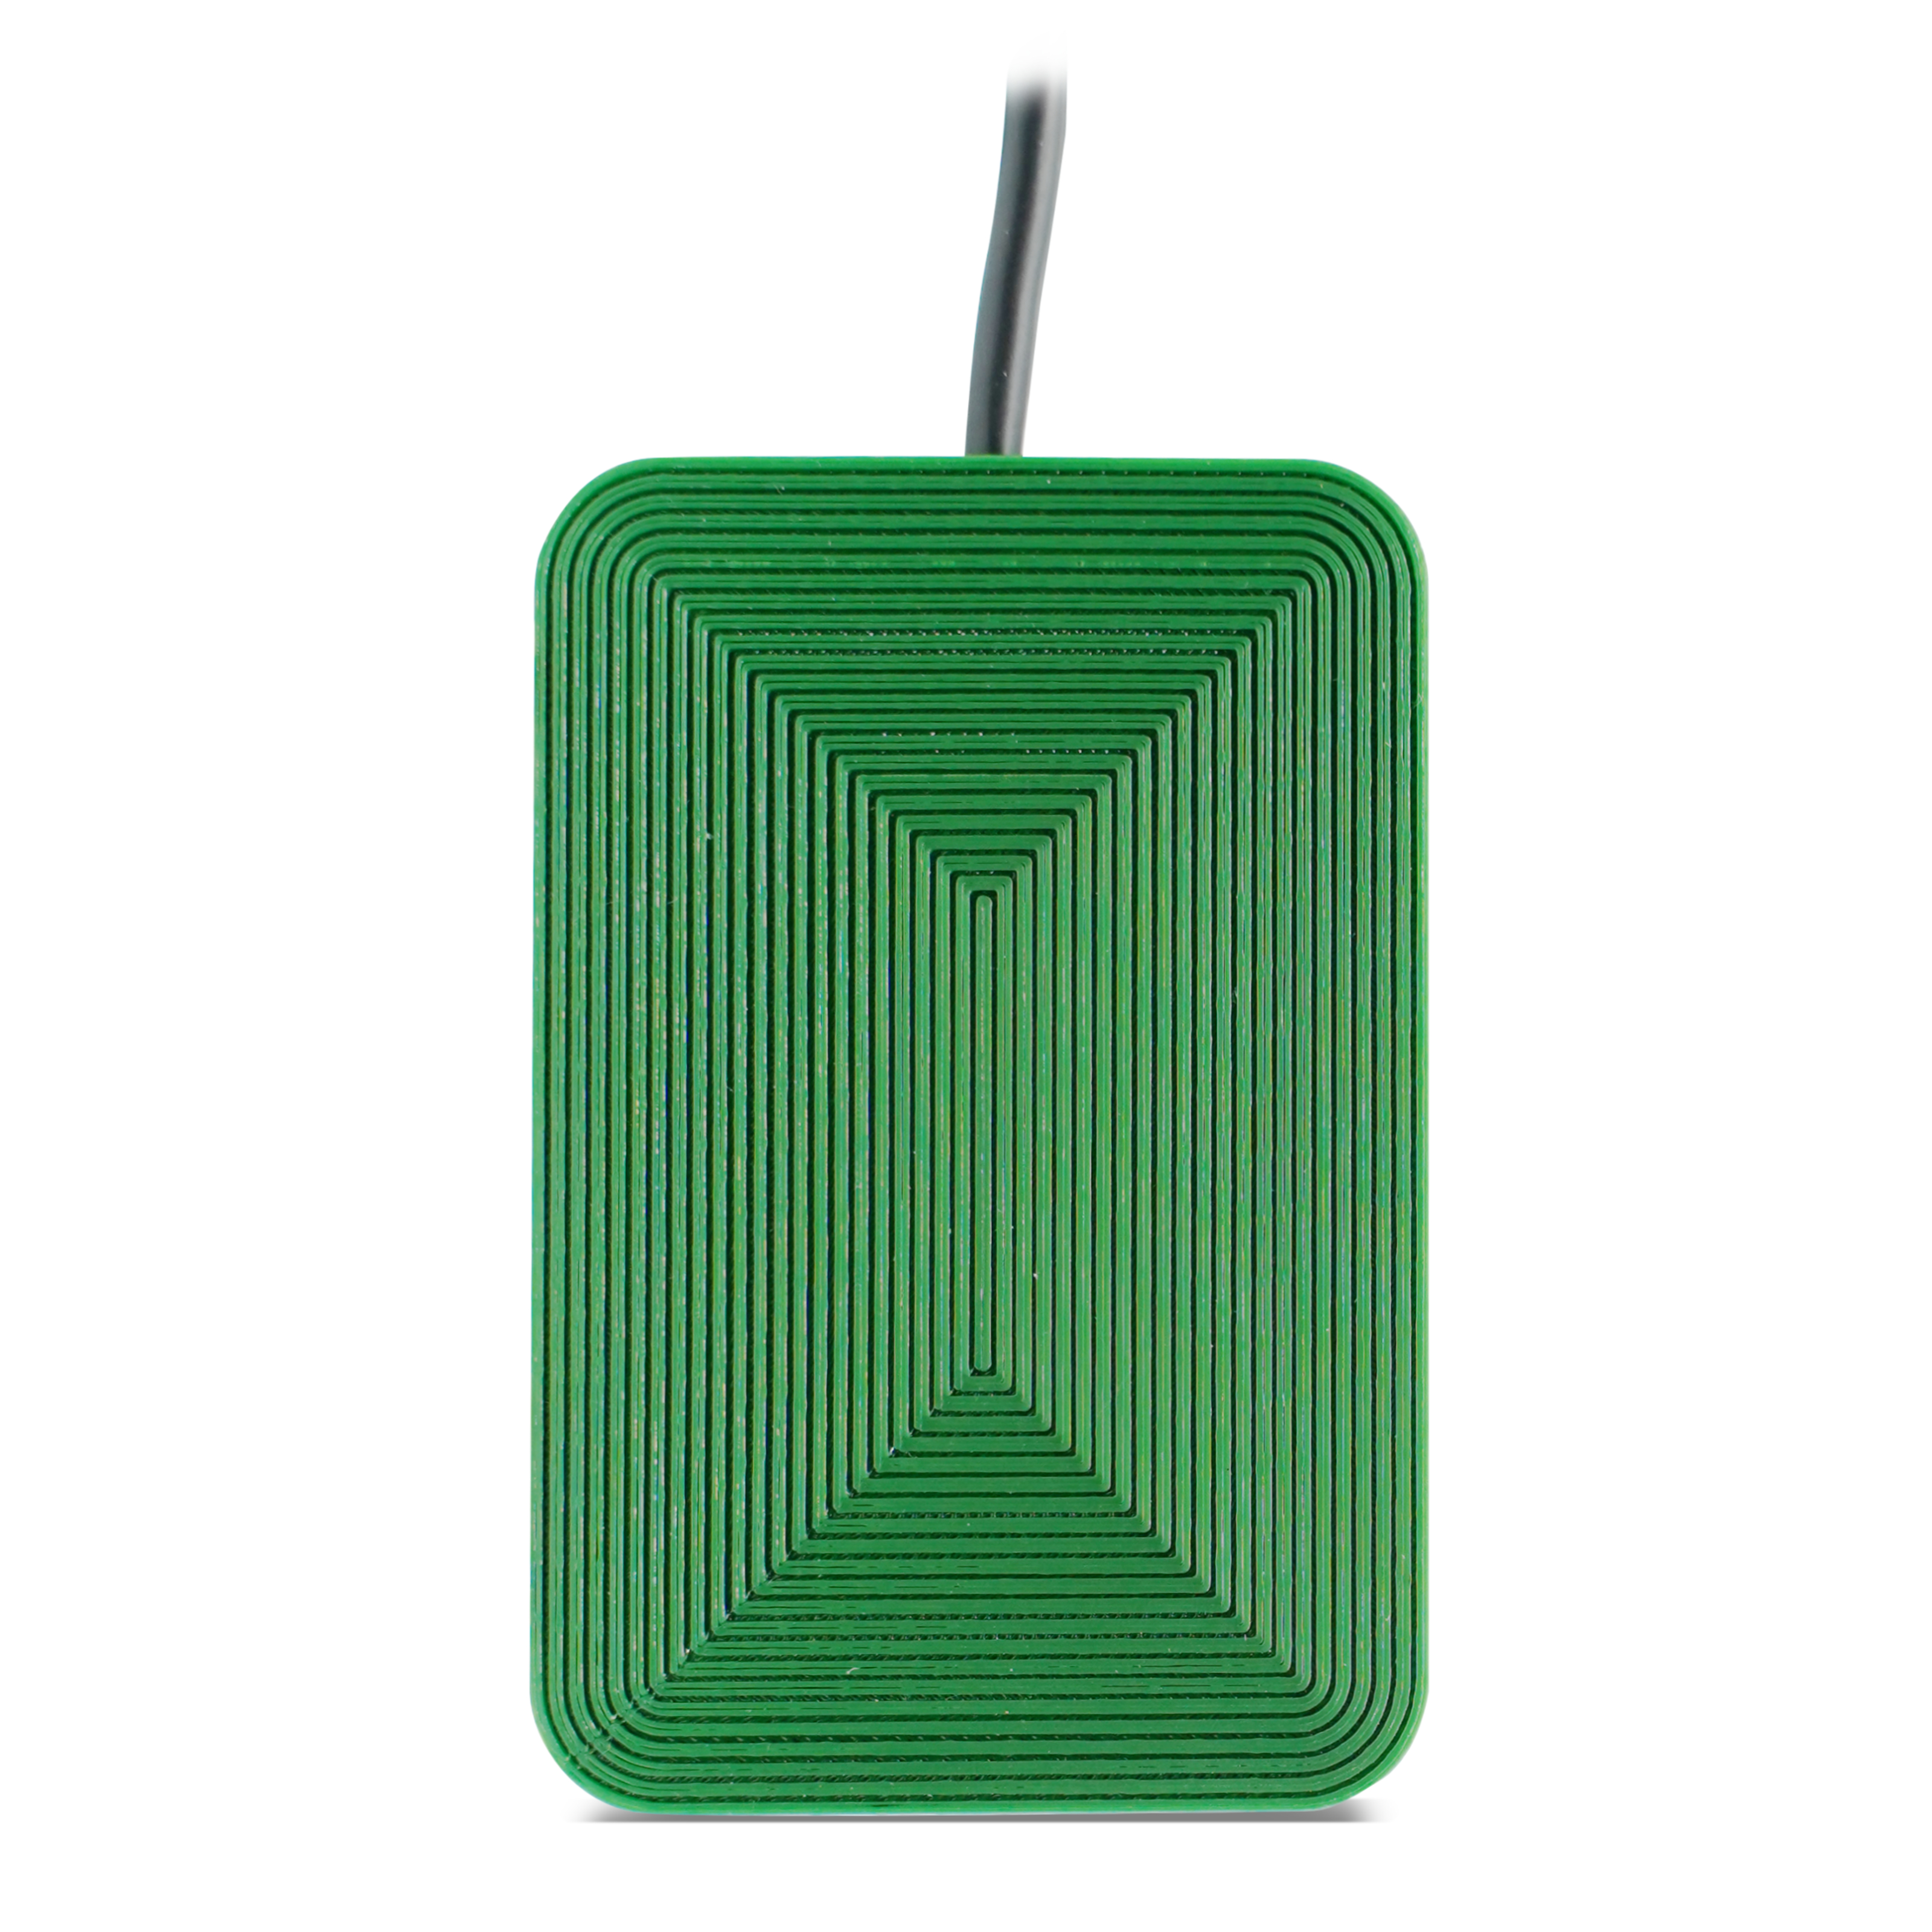 Vorderseite des grünen NFC Reader mit rillenförmigen Muster